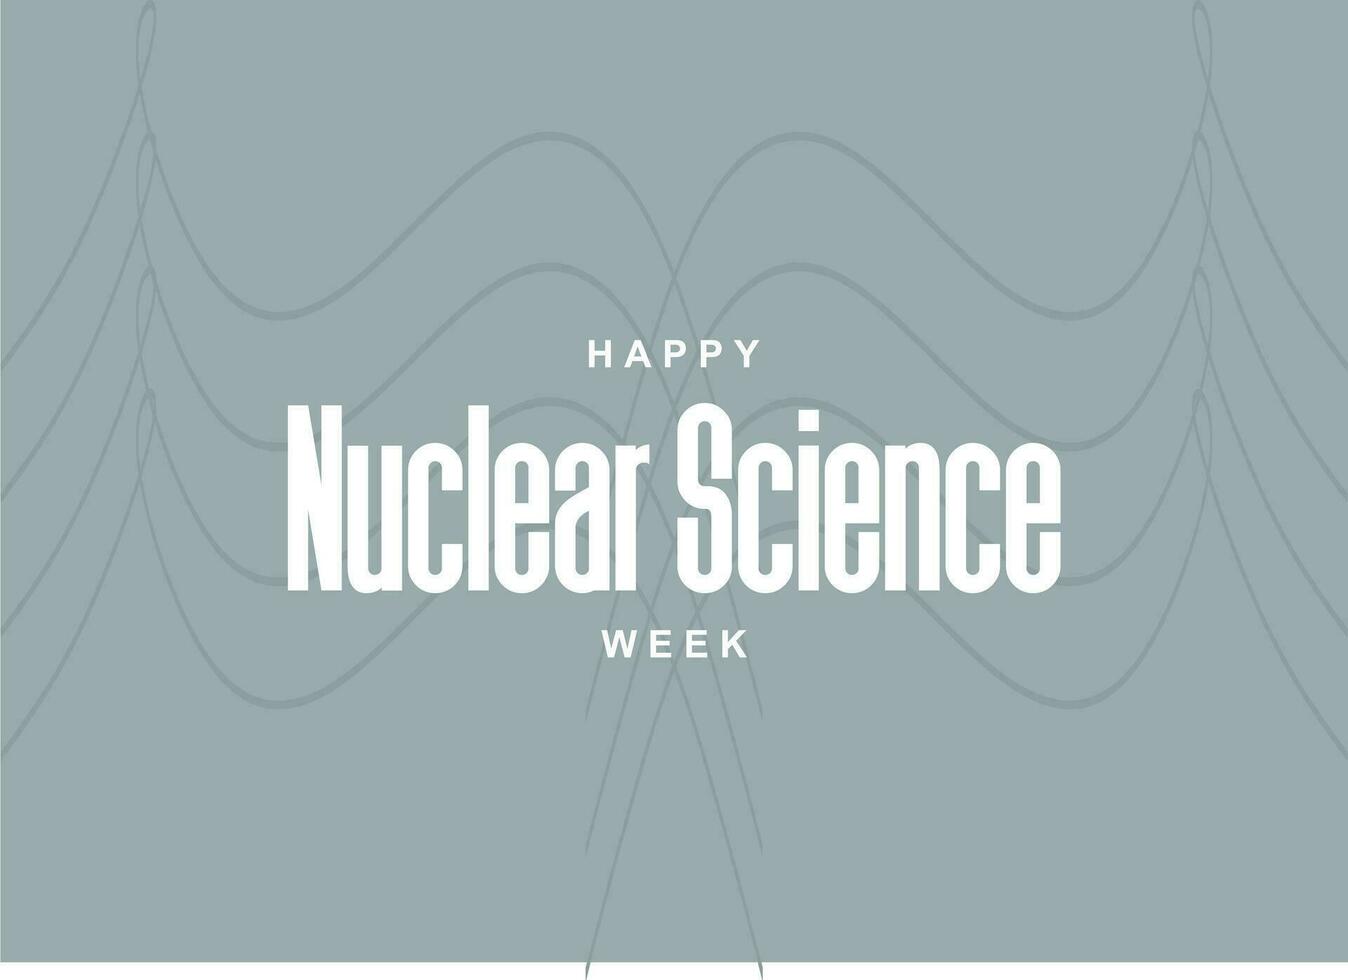 nucléaire science la semaine vecteur